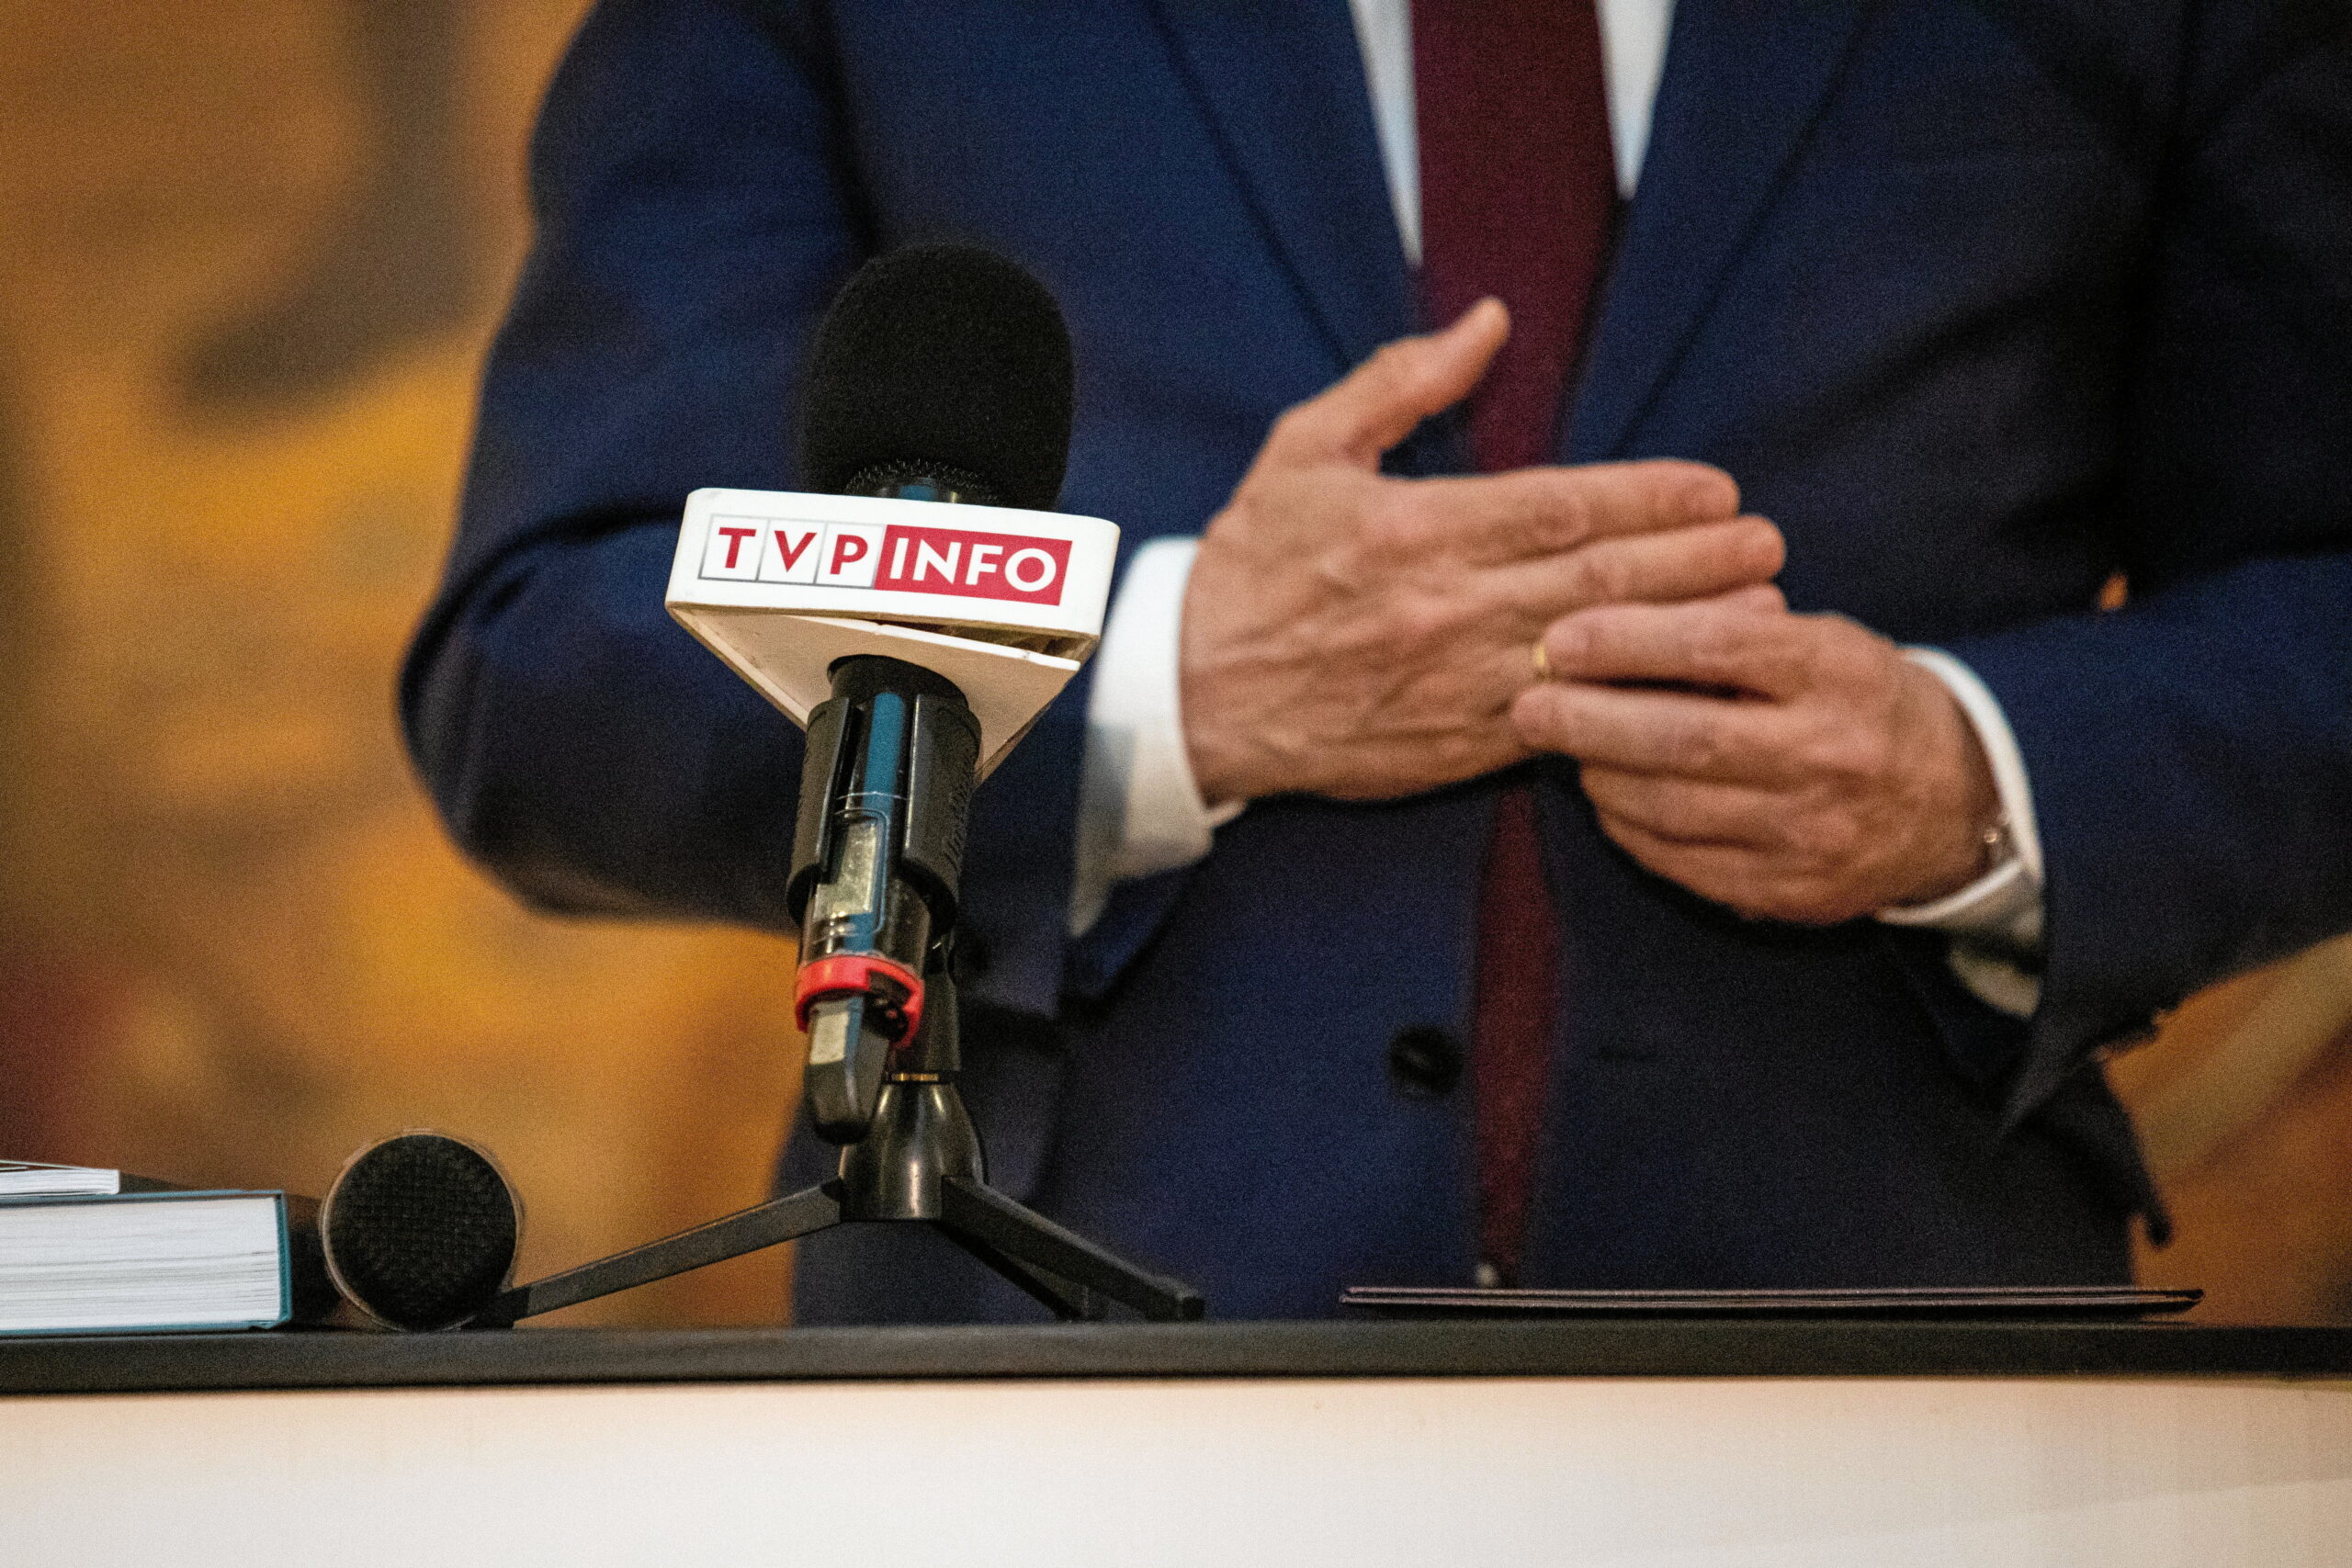 Ustępujący polski rząd w ostatnim dniu urzędowania zmienia ustawę o mediach publicznych